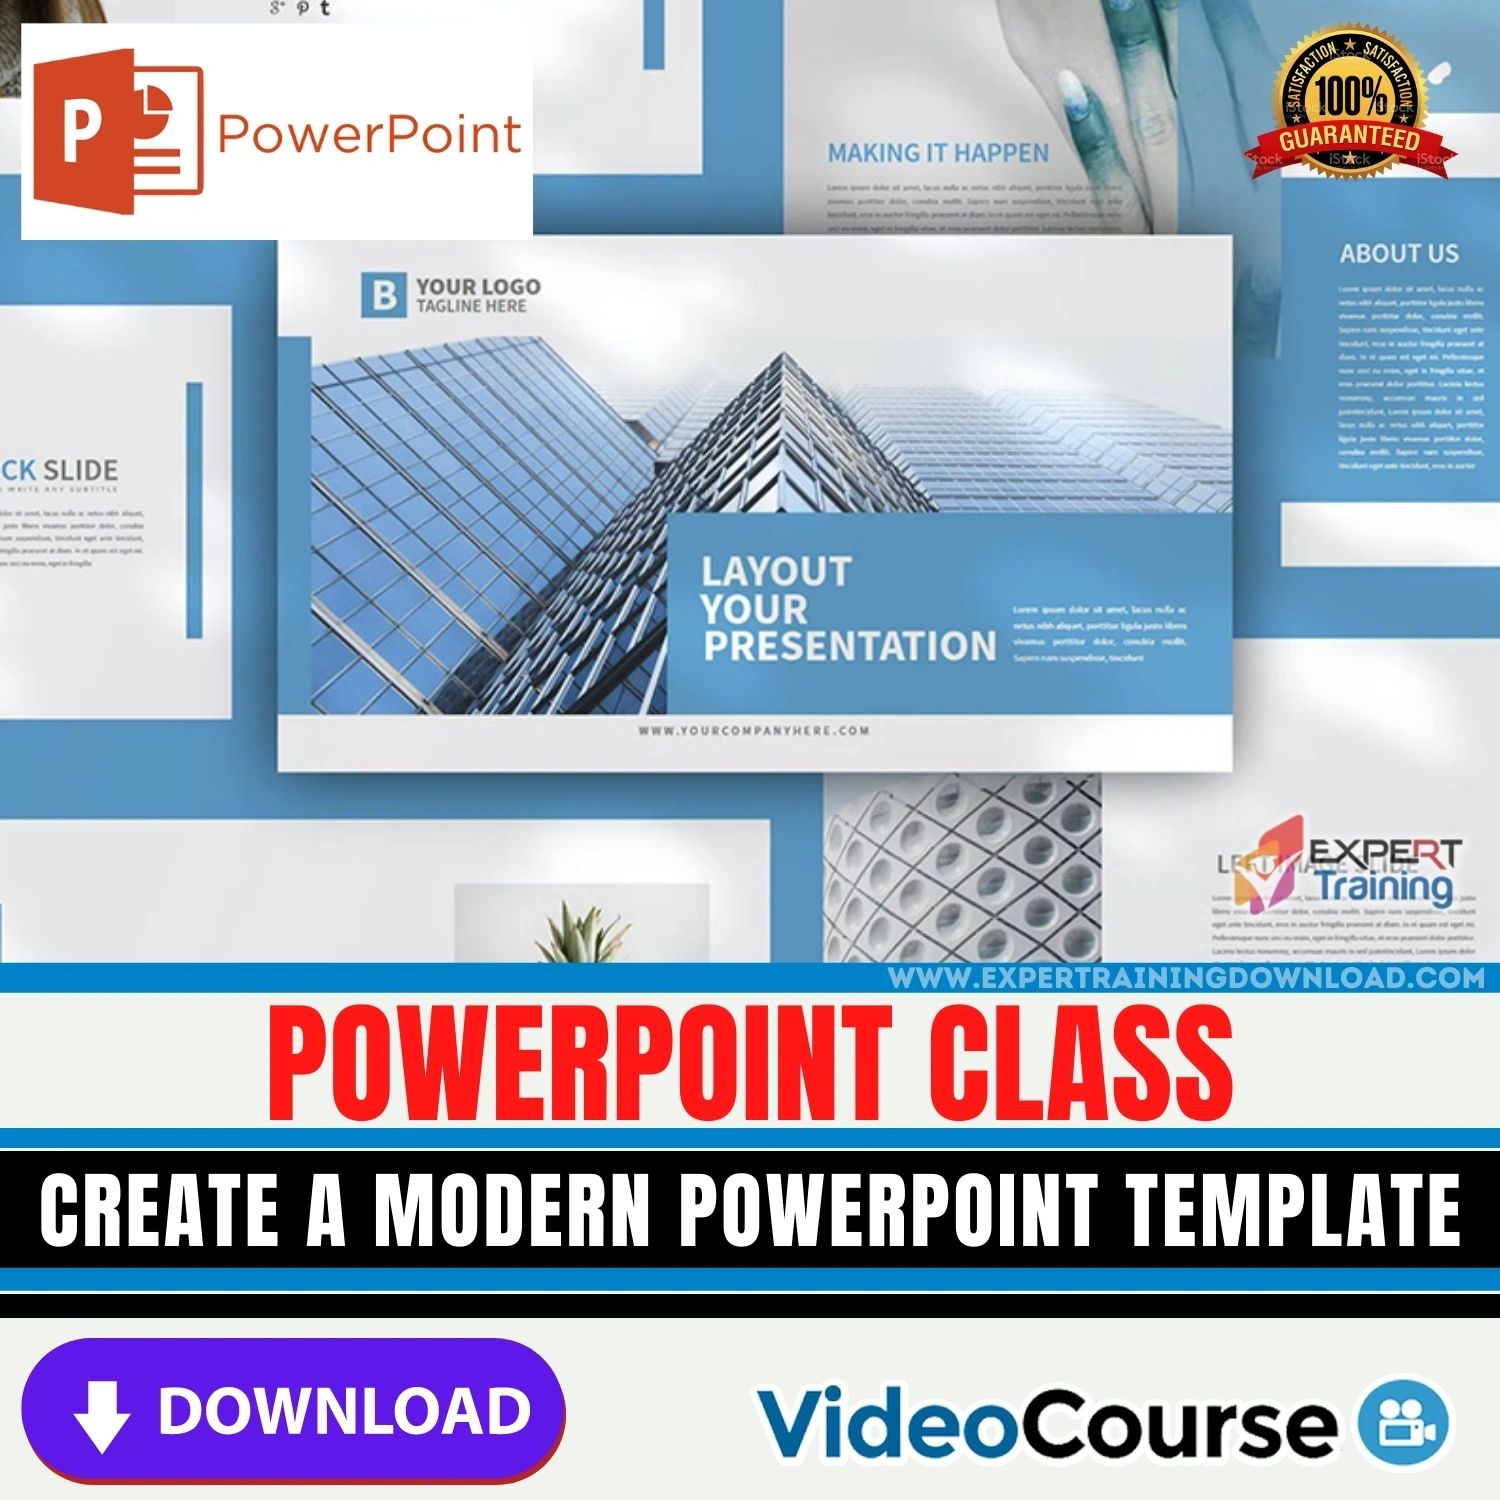 PowerPoint Class Create a Modern PowerPoint Template